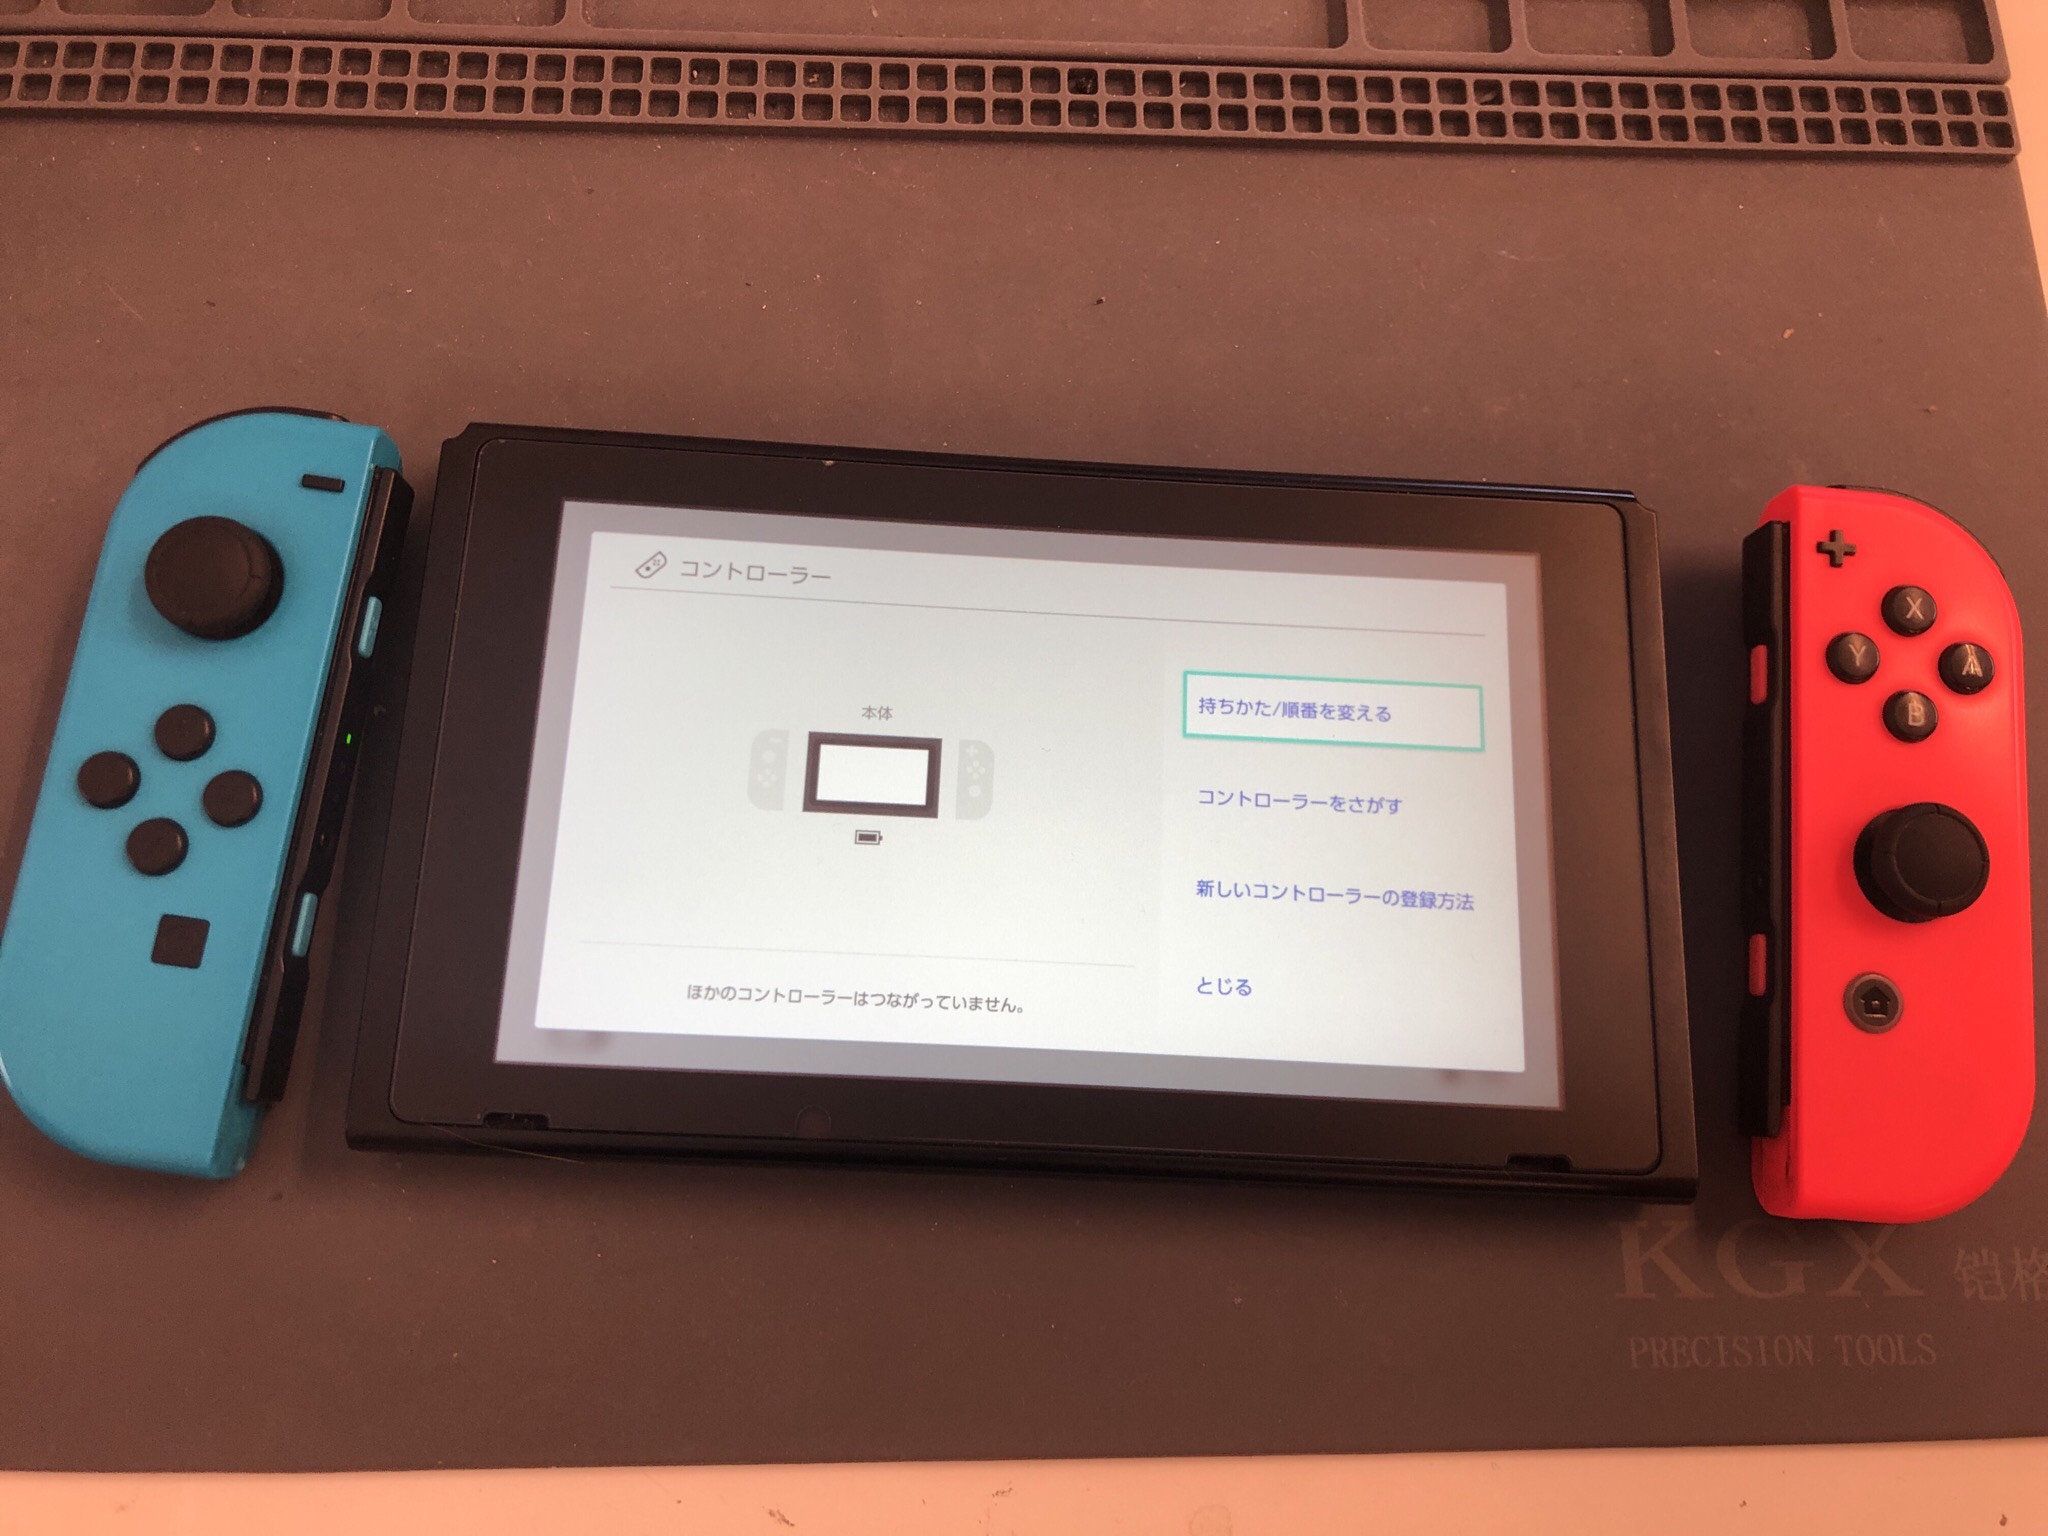 任天堂switch ジョイコンを離すと使えなくなってしまう 原因はbluetoothアンテナかも Switch Nintendo3ds Psp 修理のゲームホスピタル Switch Nintendo3ds ニンテンドーds Psp 修理